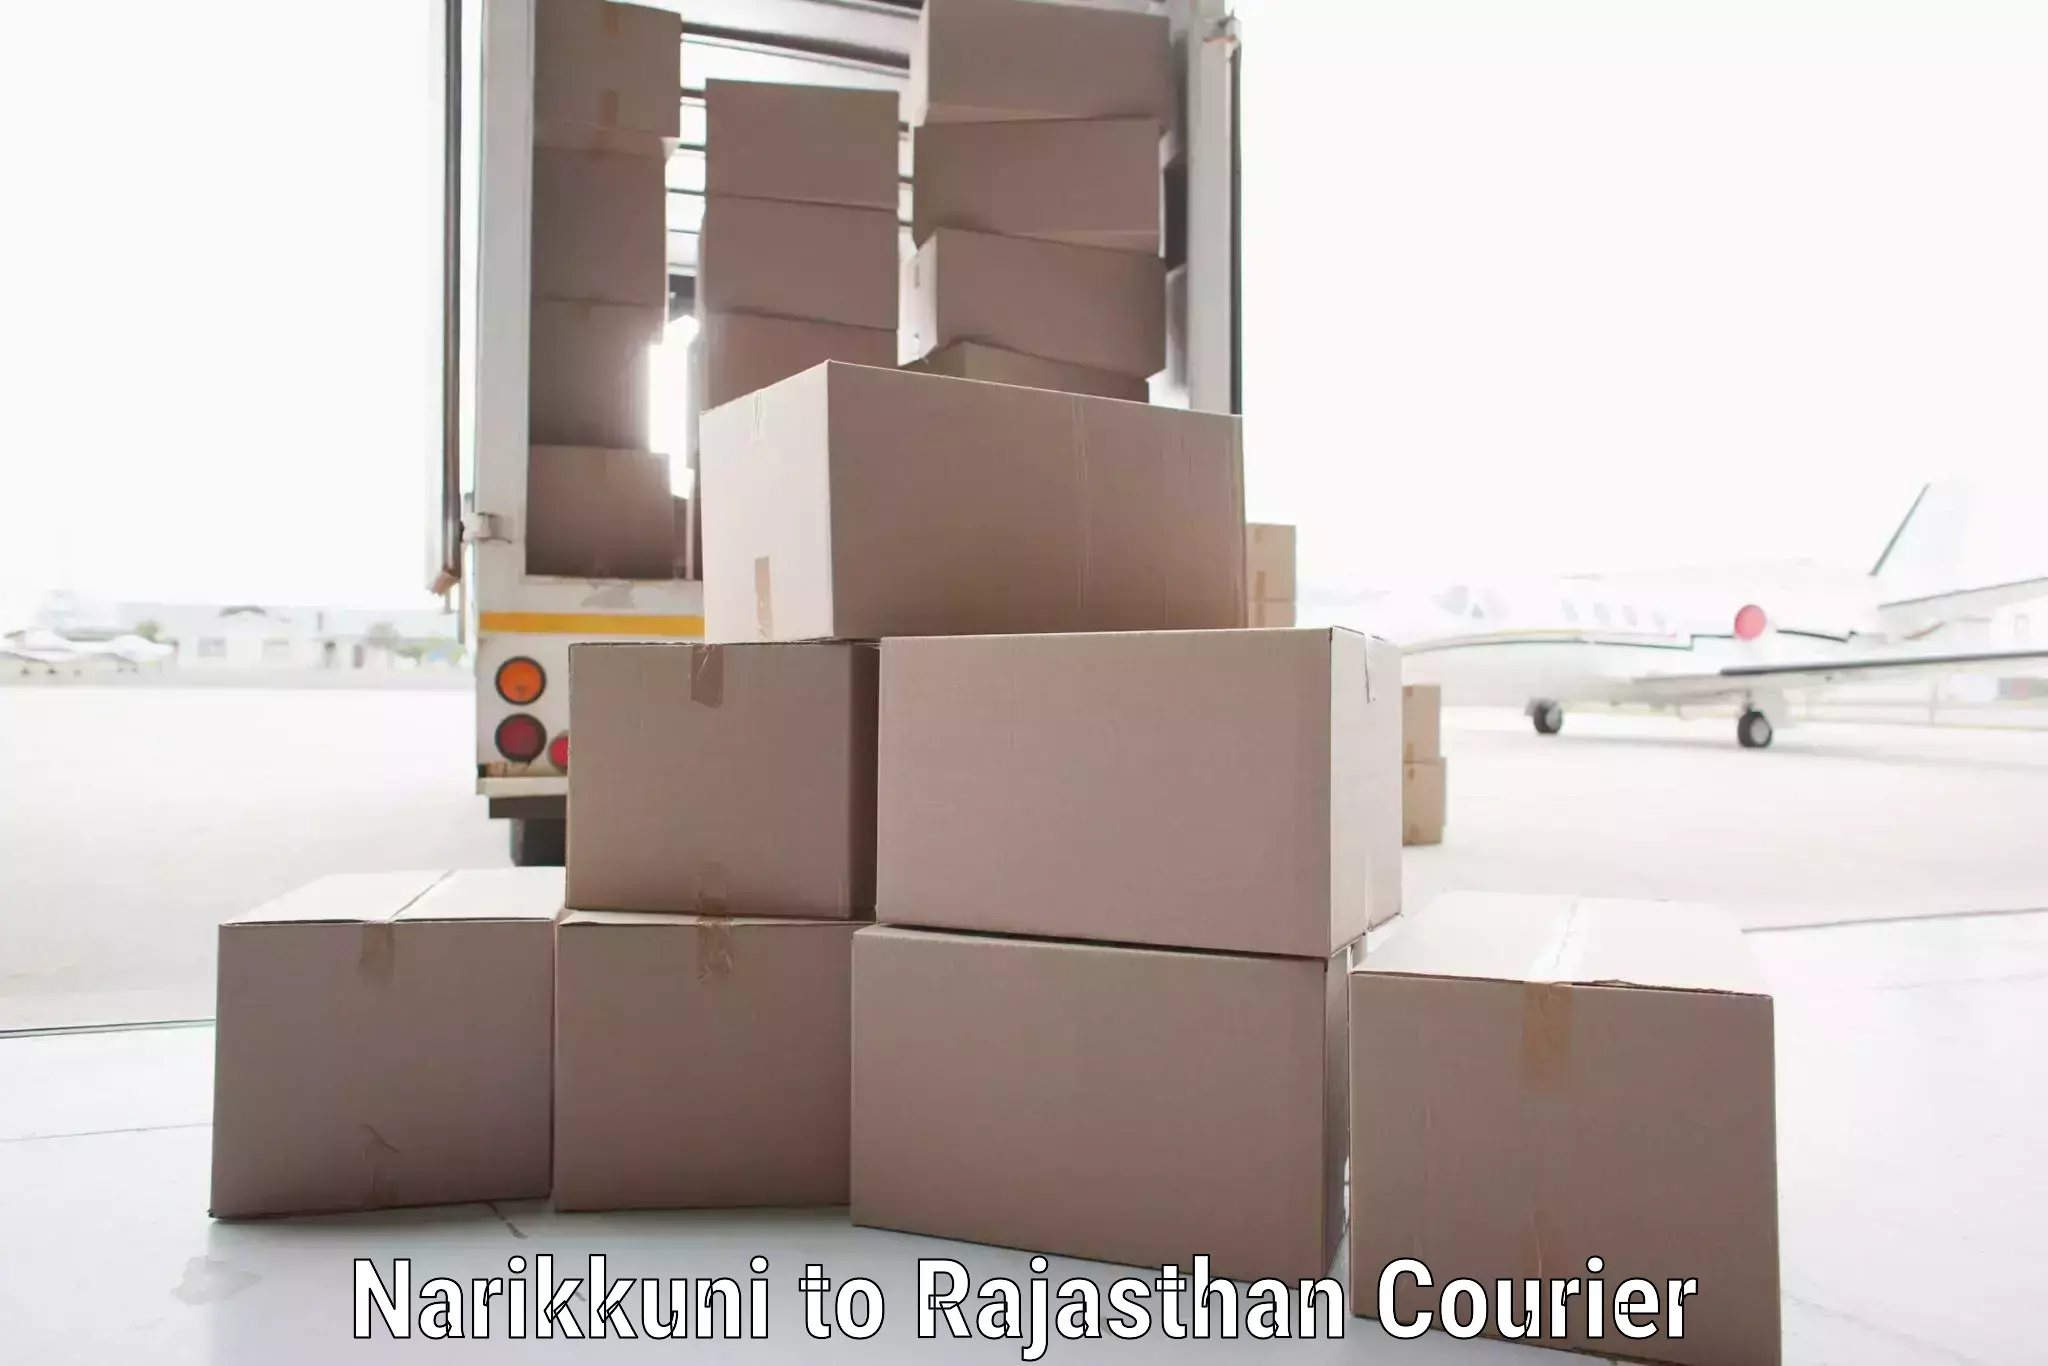 Efficient logistics management Narikkuni to Weir